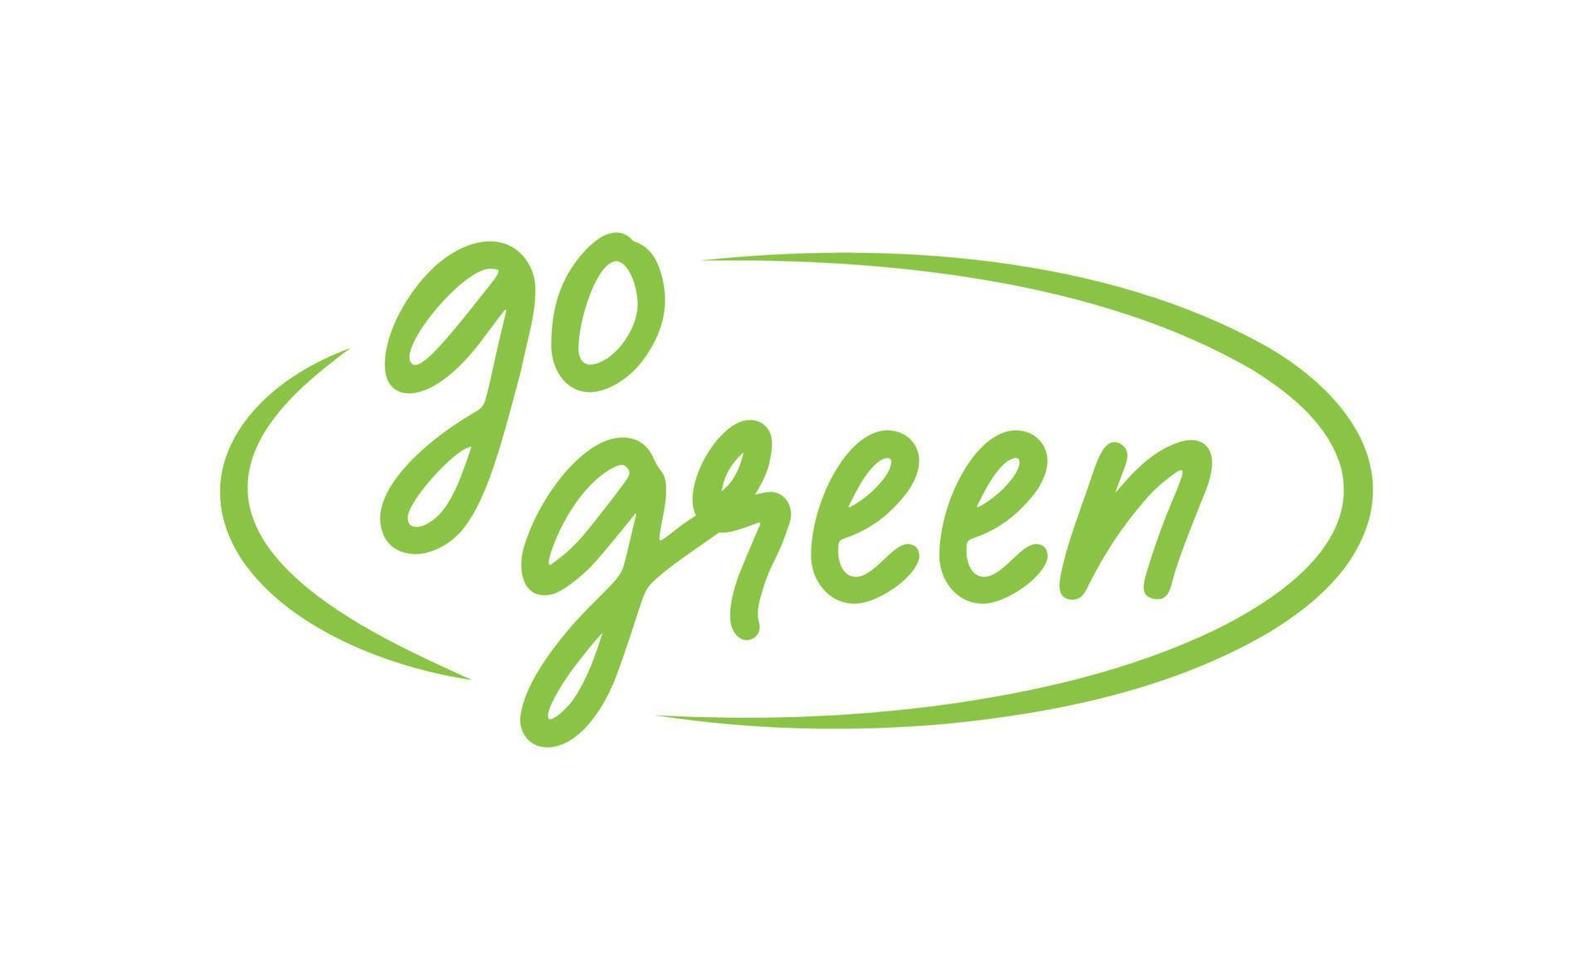 partire verde distintivo. eco-friendly slogan. distintivo perno con ambientale consapevolezza Messaggio. vettore